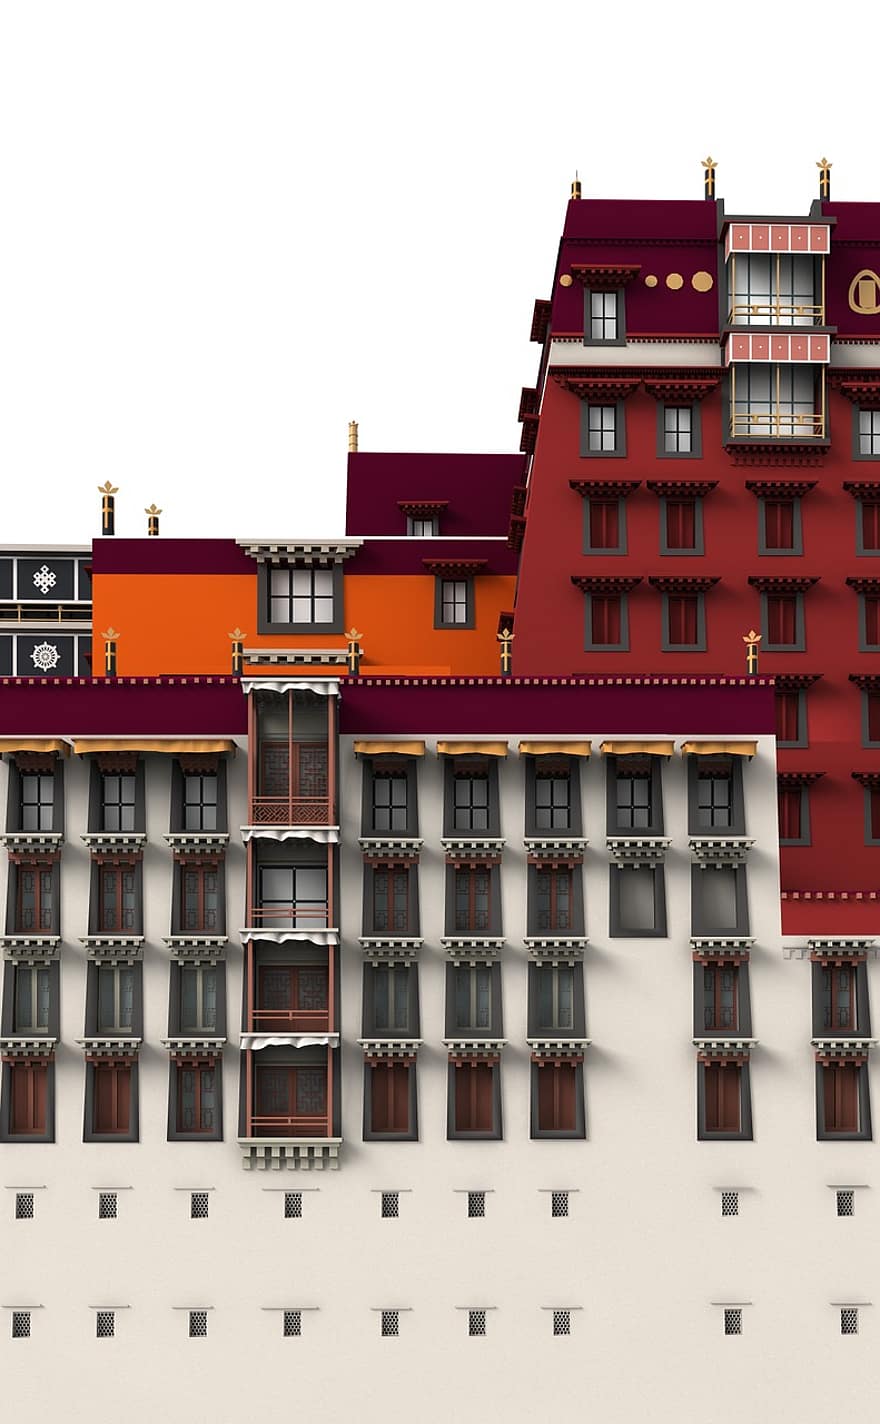 potala, palota, Lhasa, építészet, épület, templom, látnivalók, történelmileg, turisták, vonzerő, tájékozódási pont